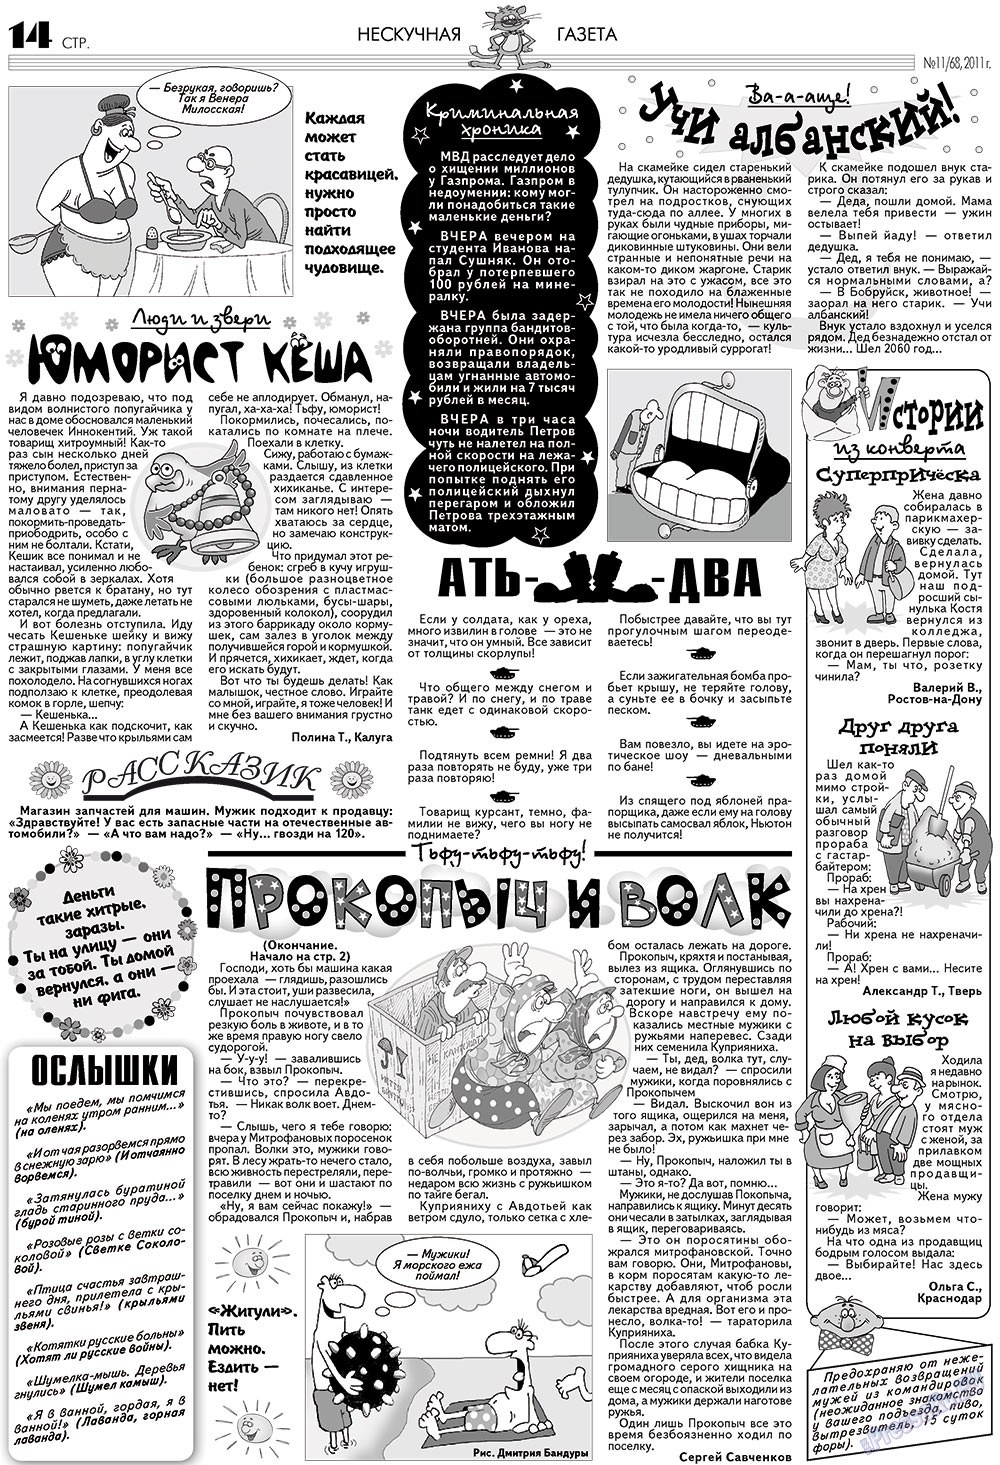 Нескучная газета (журнал). 2011 год, номер 11, стр. 14